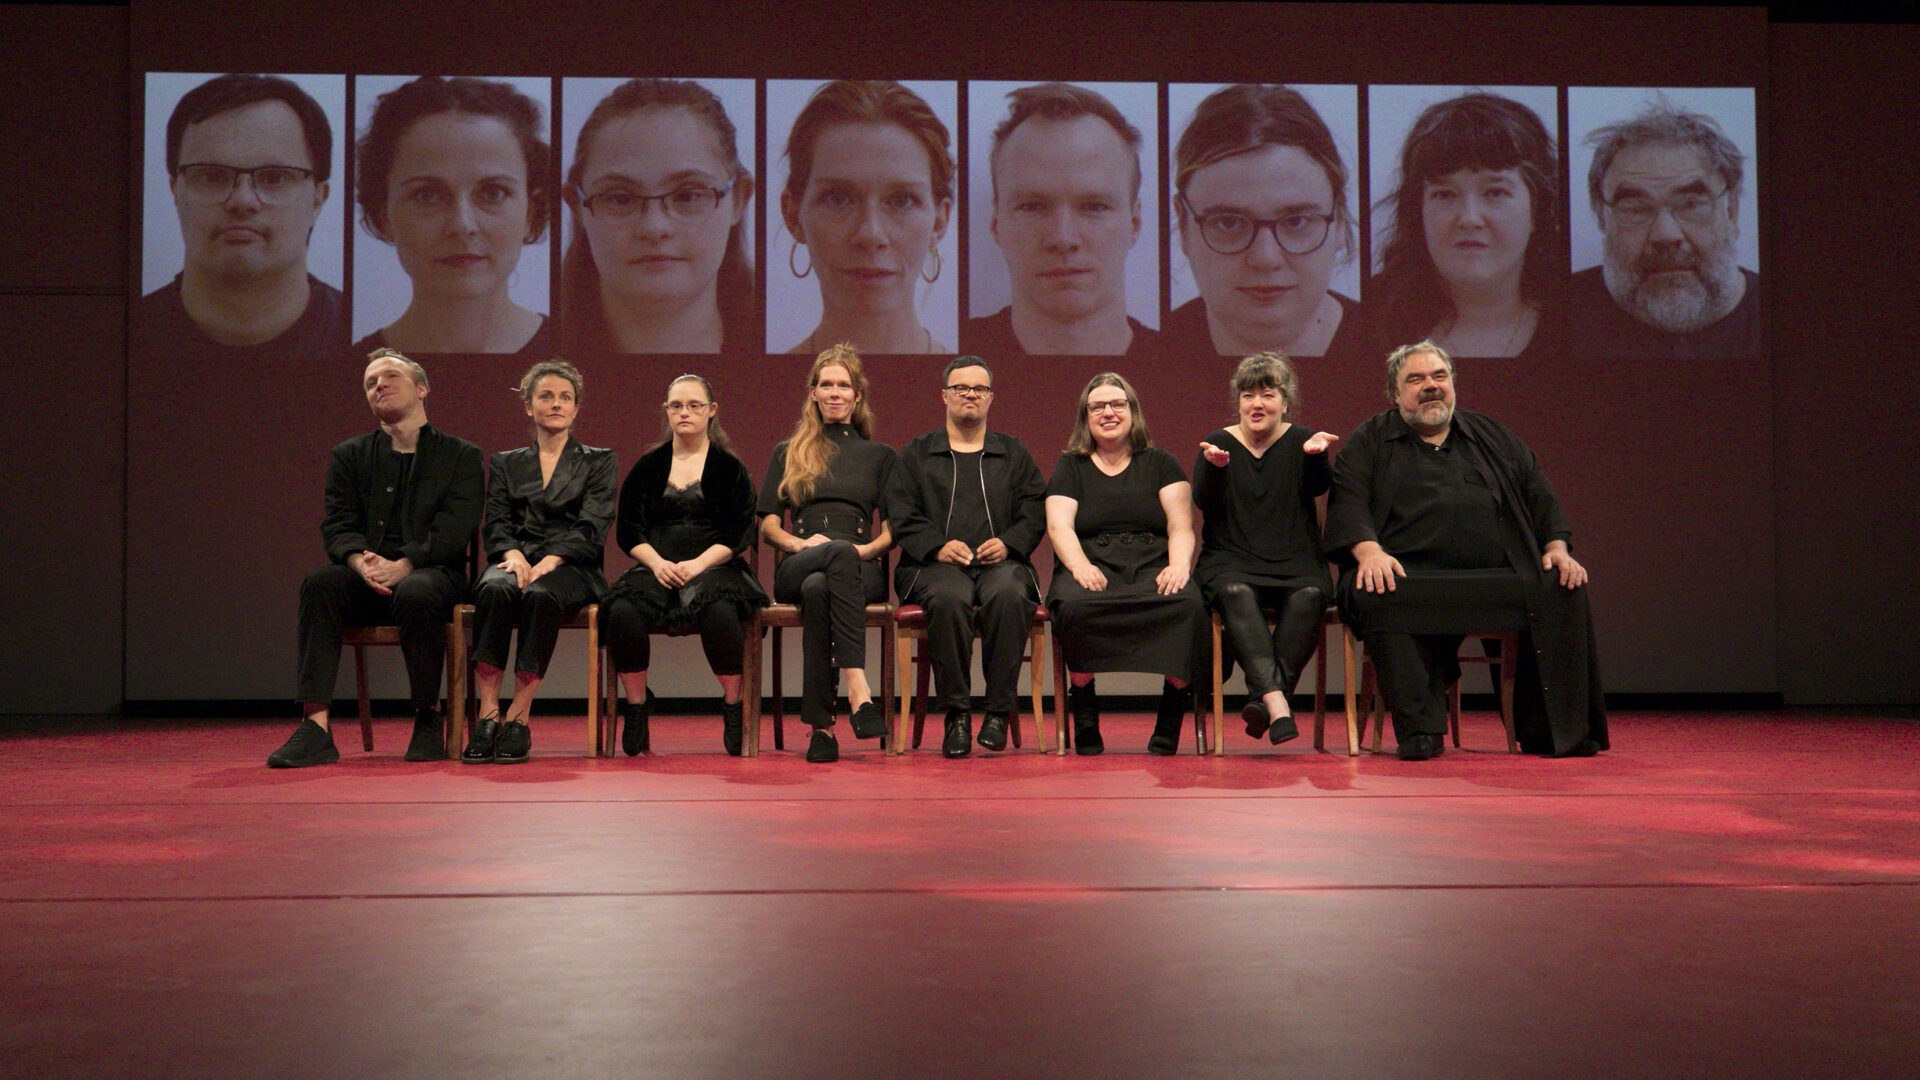 Szenenfoto einer Auffuehrung: Mehrere Personen sitzen in einer Reihe nebeneinander auf einer Theaterbühne. Im Hintergrund eine Projektion mit verschiedenen Gesichtern.